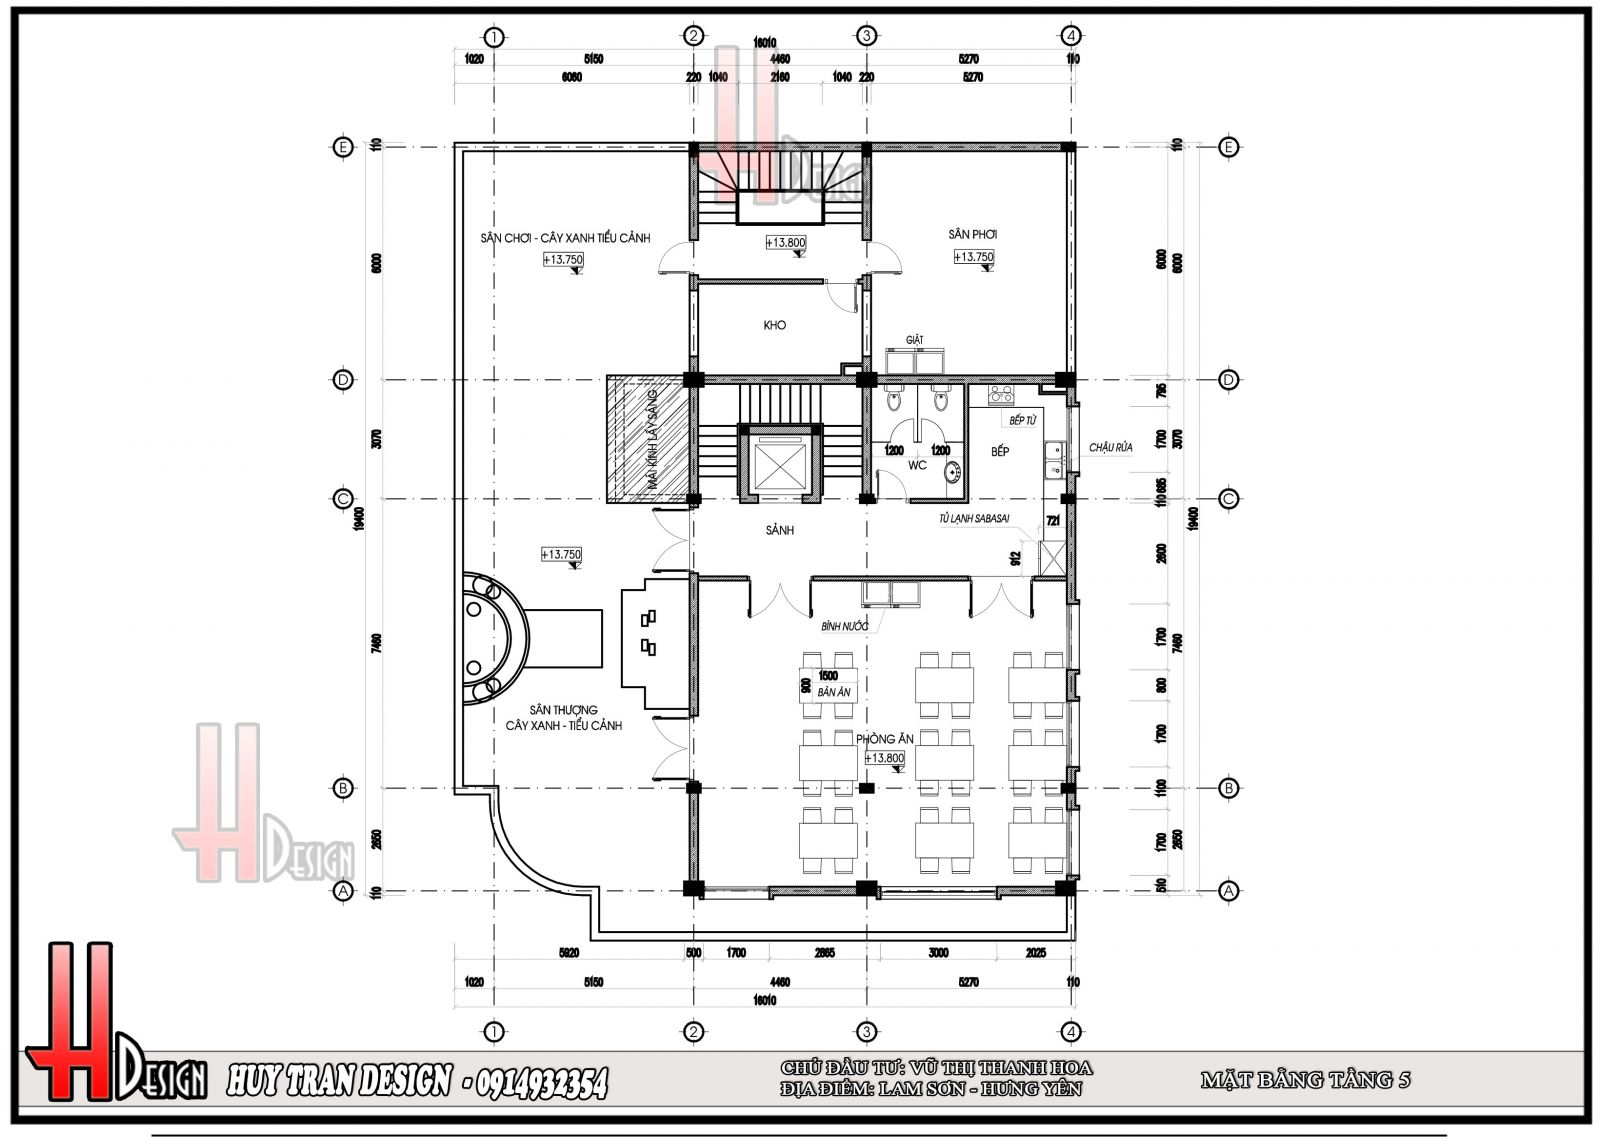 Mẫu thiết kế mặt bằng tầng 5 văn phòng làm việc - Huytrandesign tư vấn, thiết kế, thi công, sửa chữa nhà cửa, biệt thự, văn phòng, cơ sở kinh doanh-v1